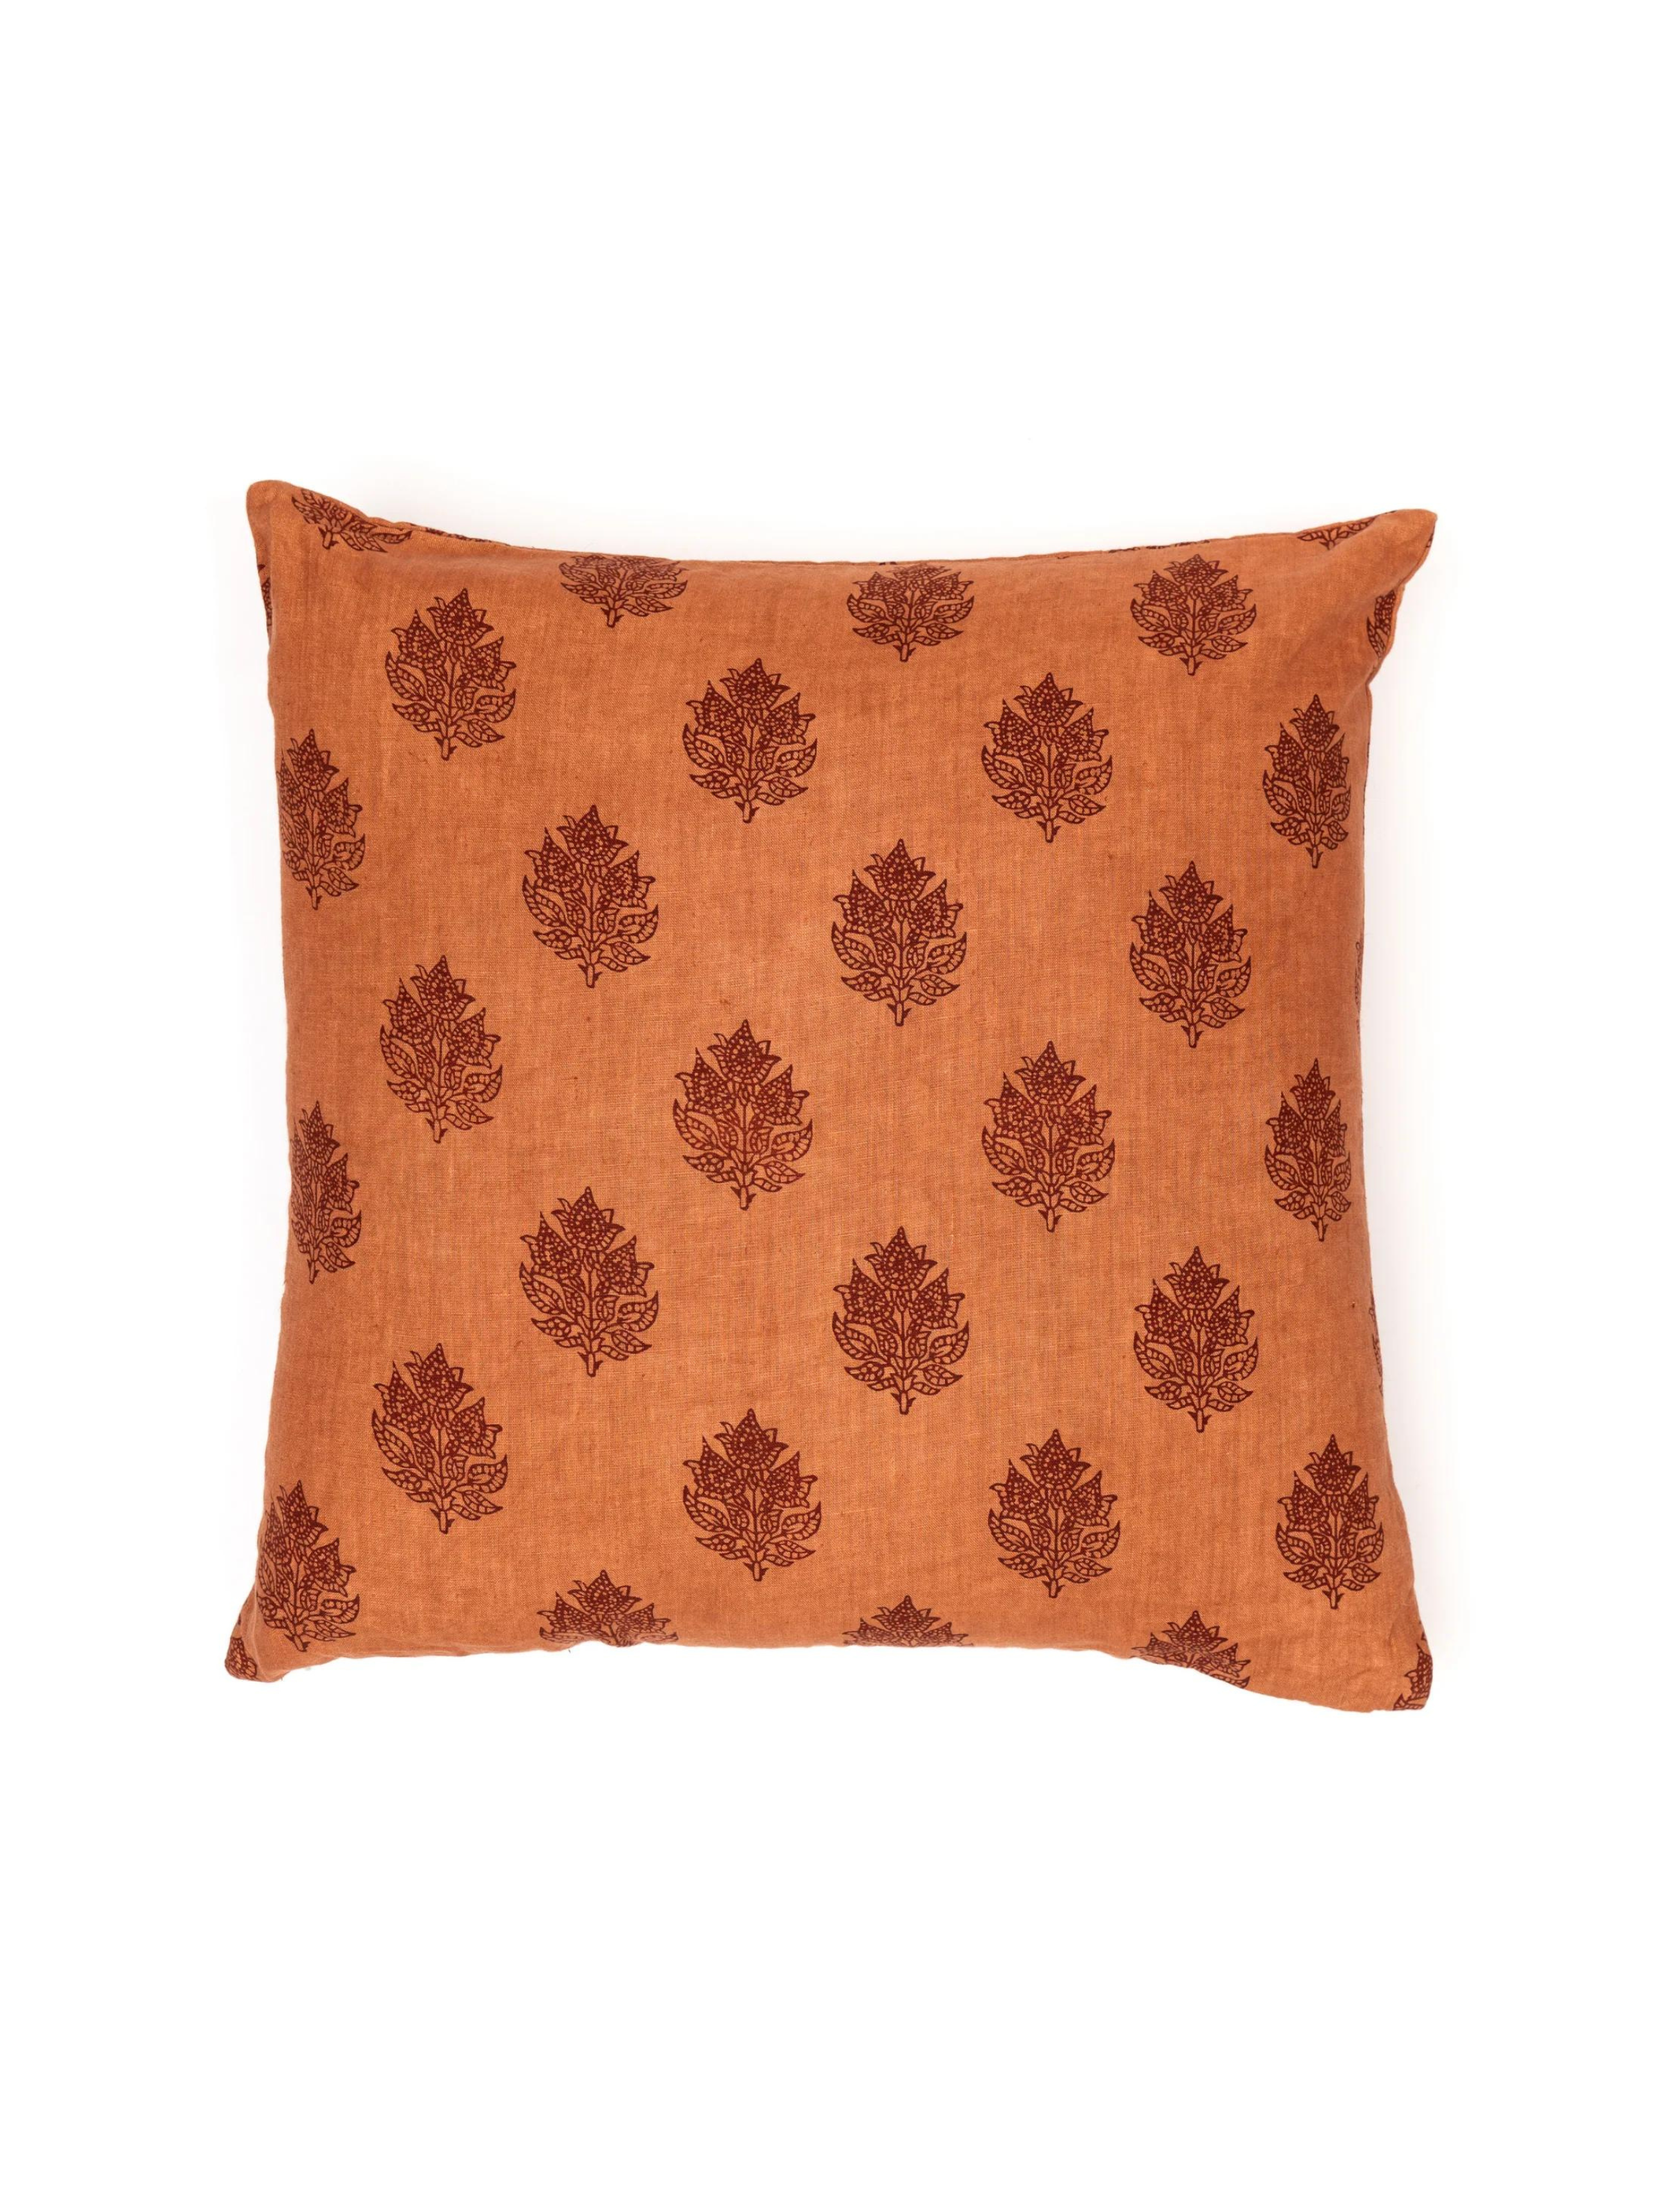 Rishi Cinnamon/Clay Decorative Pillow Cover